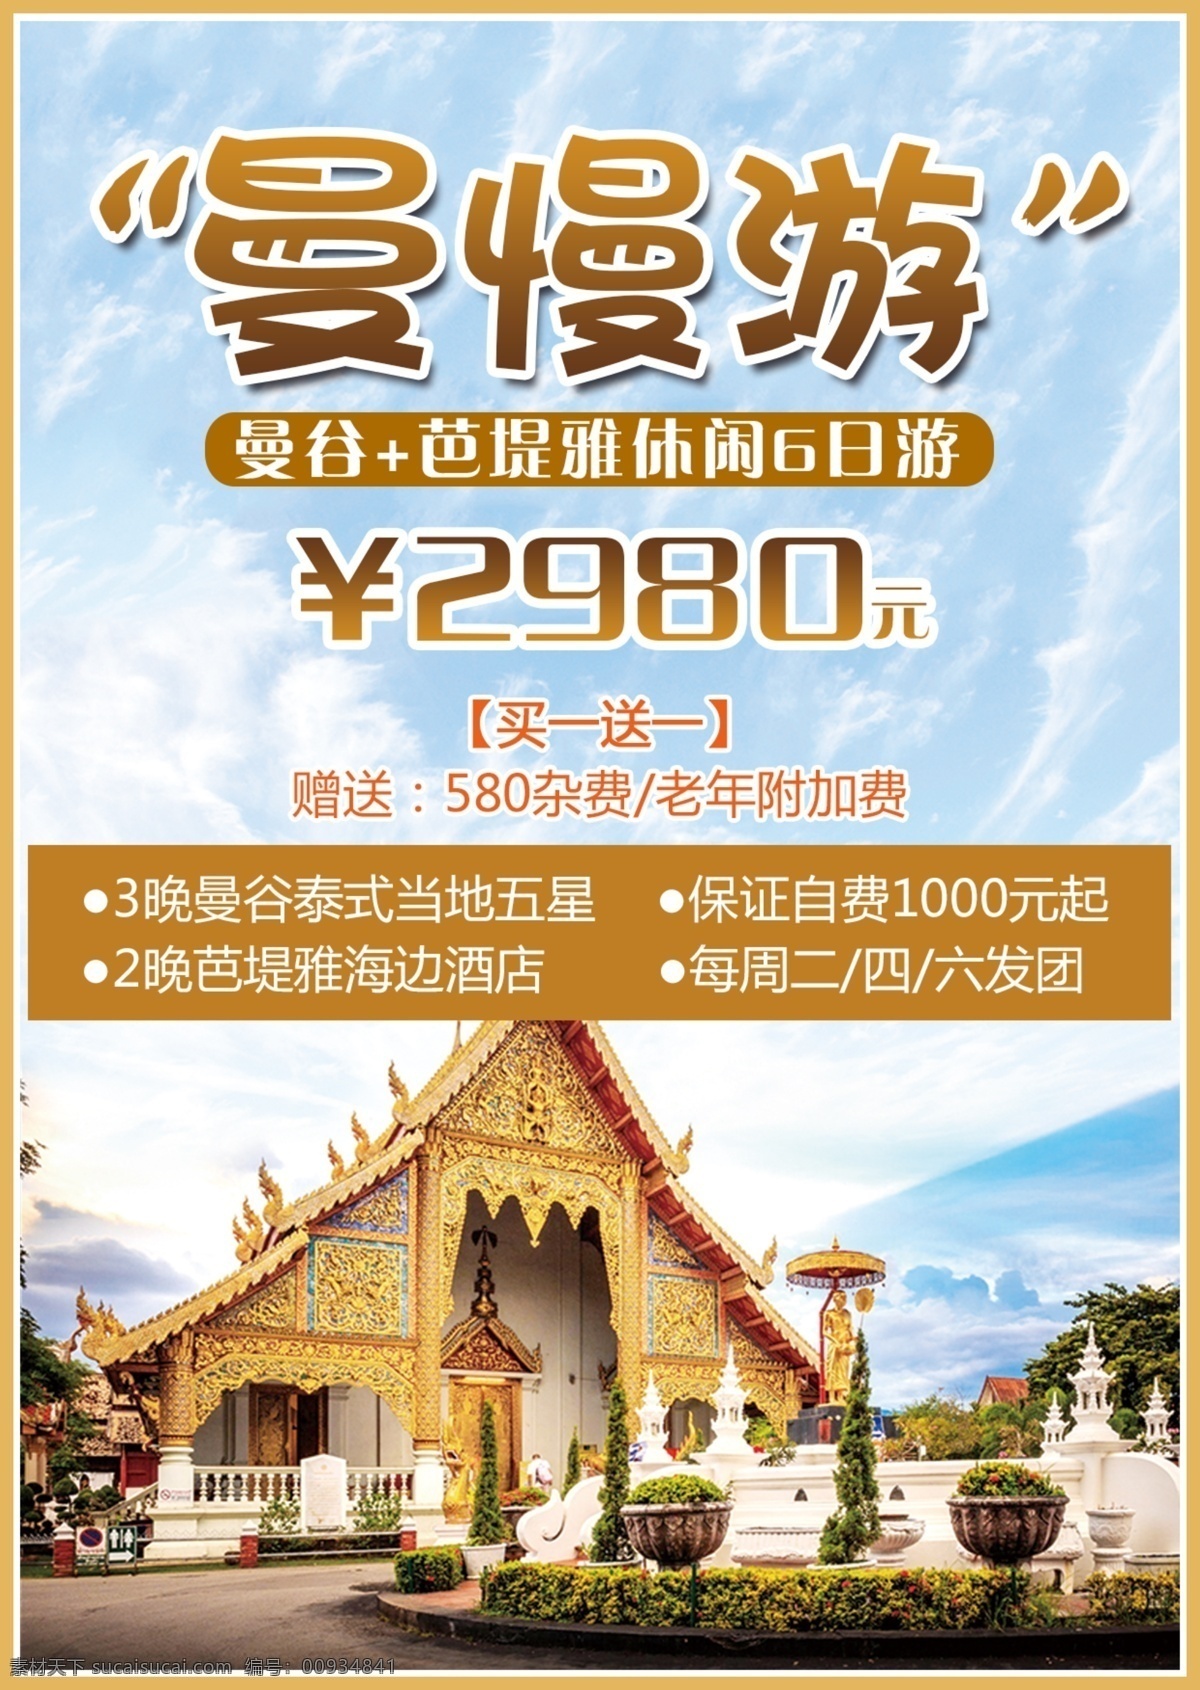 泰国 旅游产品 广告 东南亚 曼谷 芭提雅 大皇宫 旅游 旅游广告 海报 蓝天 白云